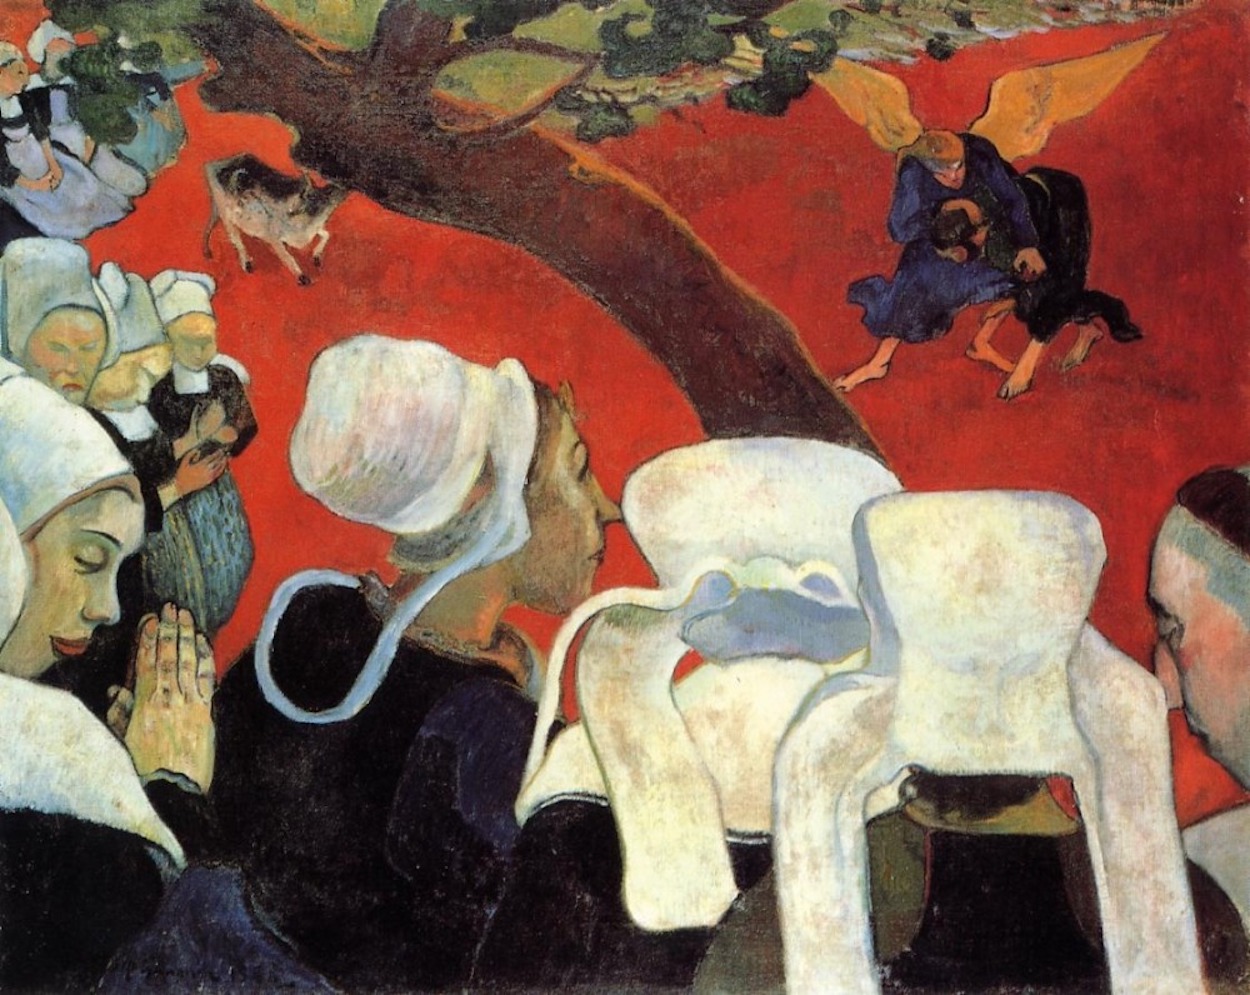 Visione del Sermone by Paul Gauguin - 1888 - 74.4 x 93.1 cm 